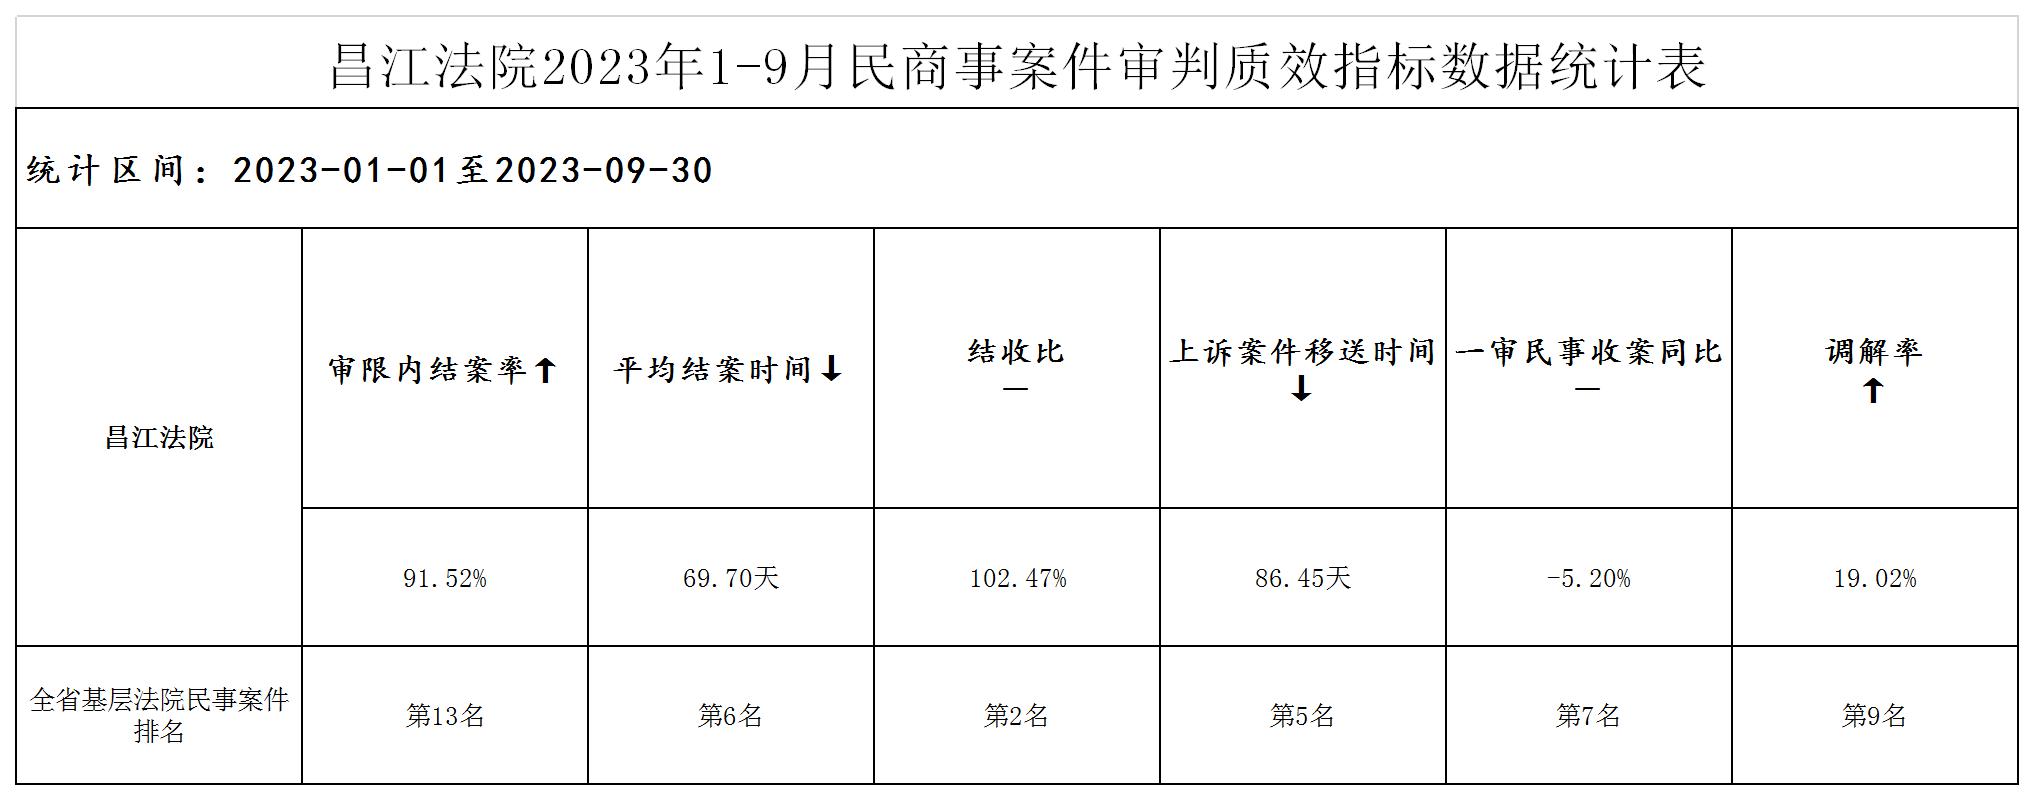 昌江法院2023年1-9月民商事案件审判质效指标数据统计表（事务公开2023年10月16日）.jpg